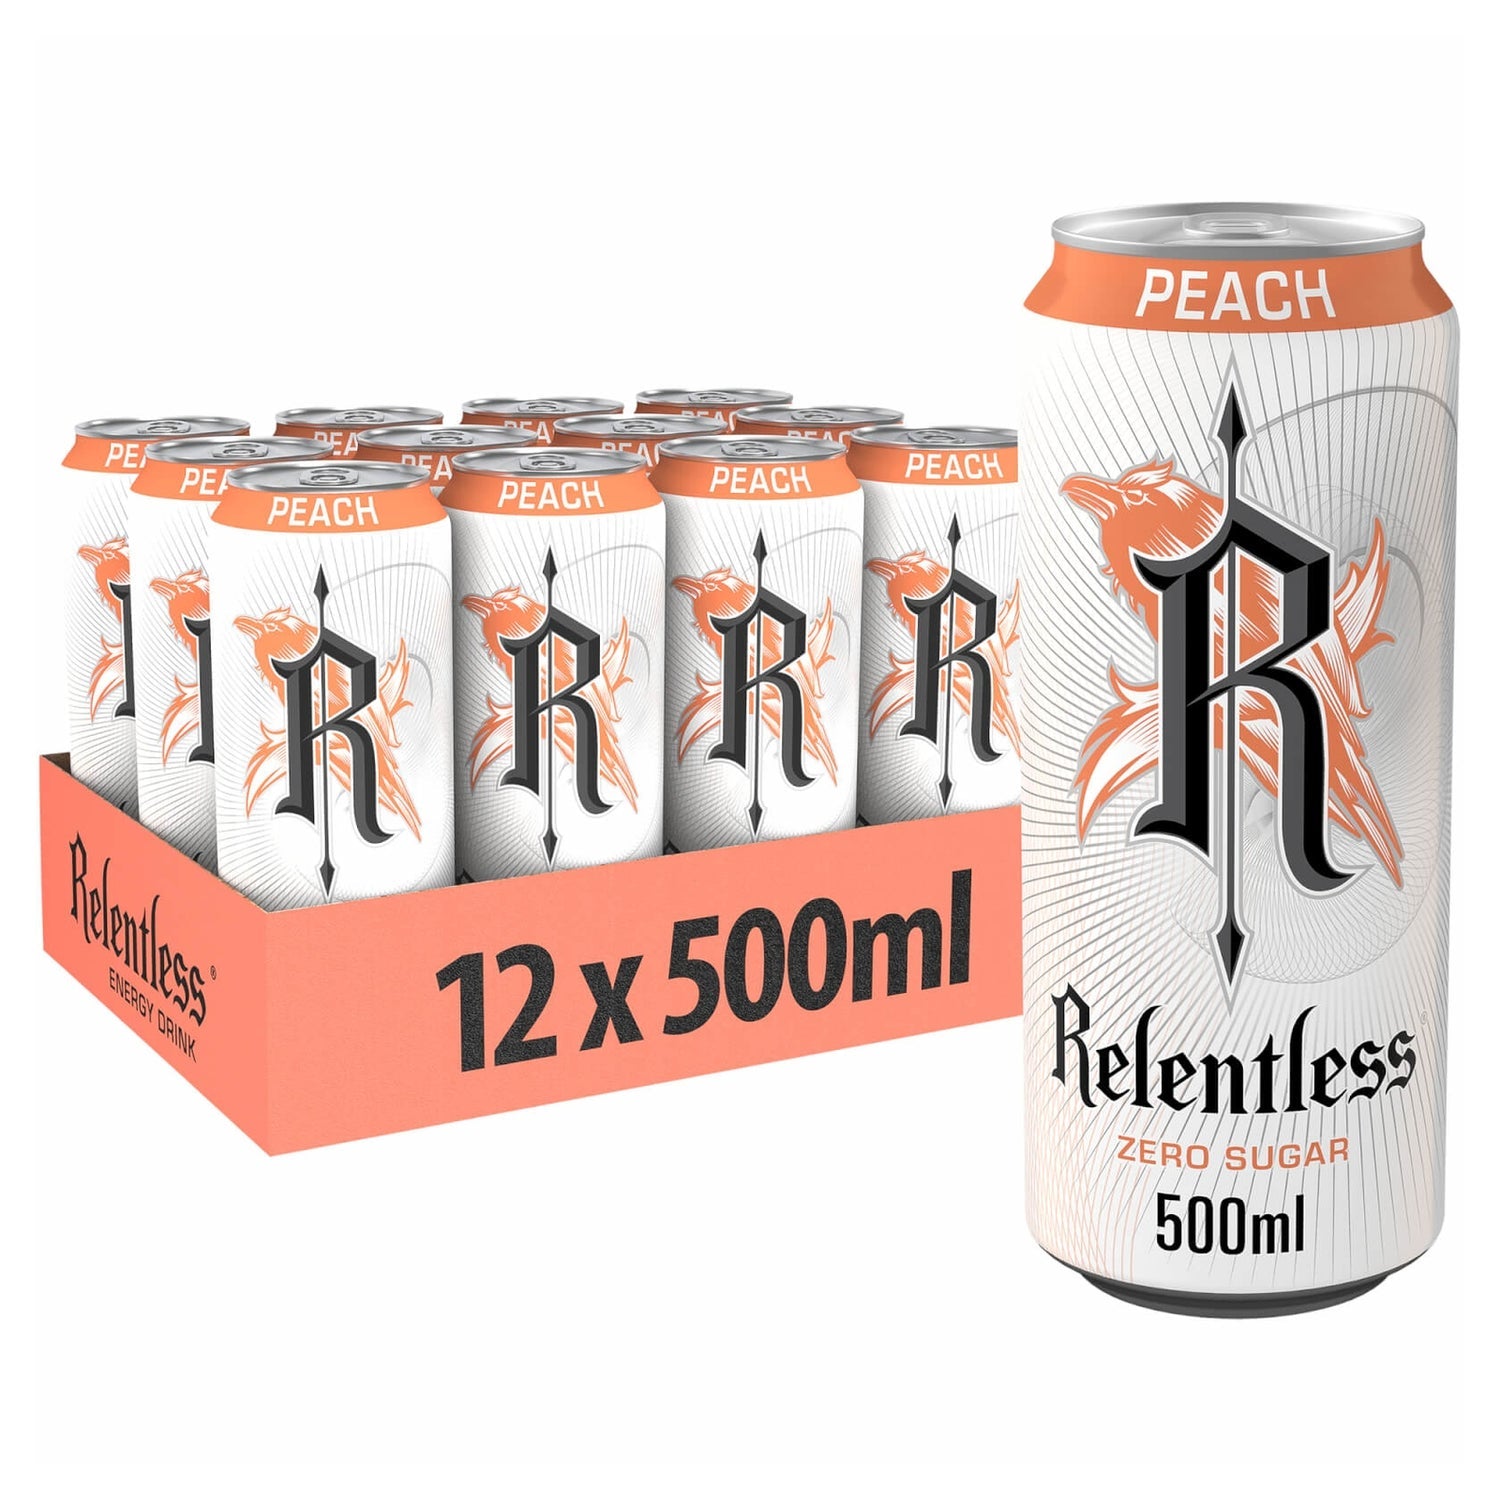 Relentless Peach Zero Sugar - 500ml Case of 12